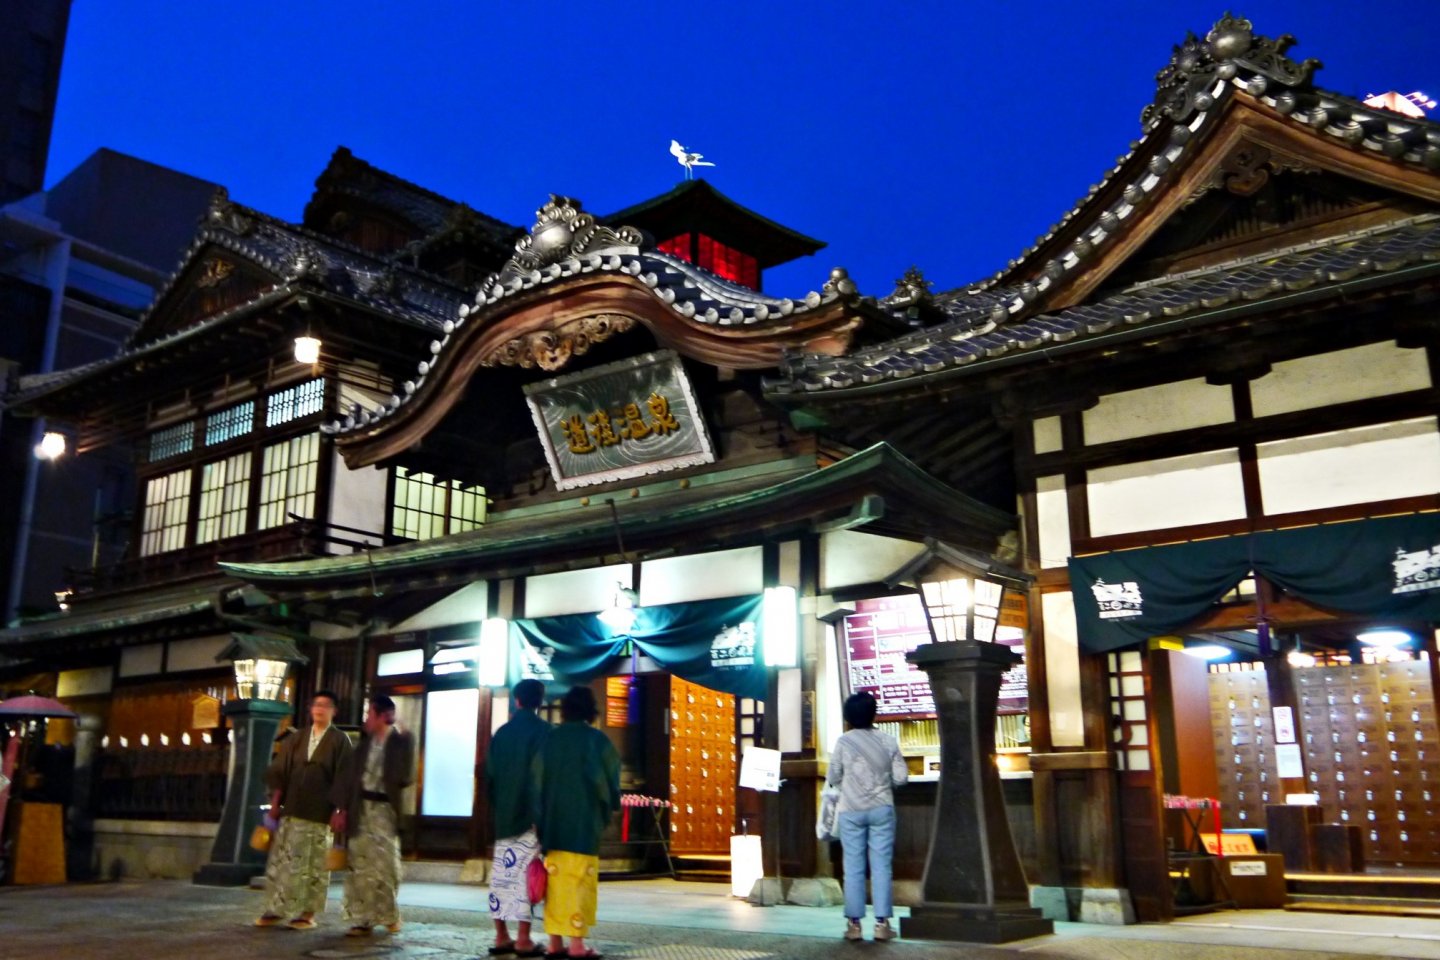 一個人的四國之旅 在3000年的道後溫泉遇見神隱少女油屋 愛媛 Japan Travel